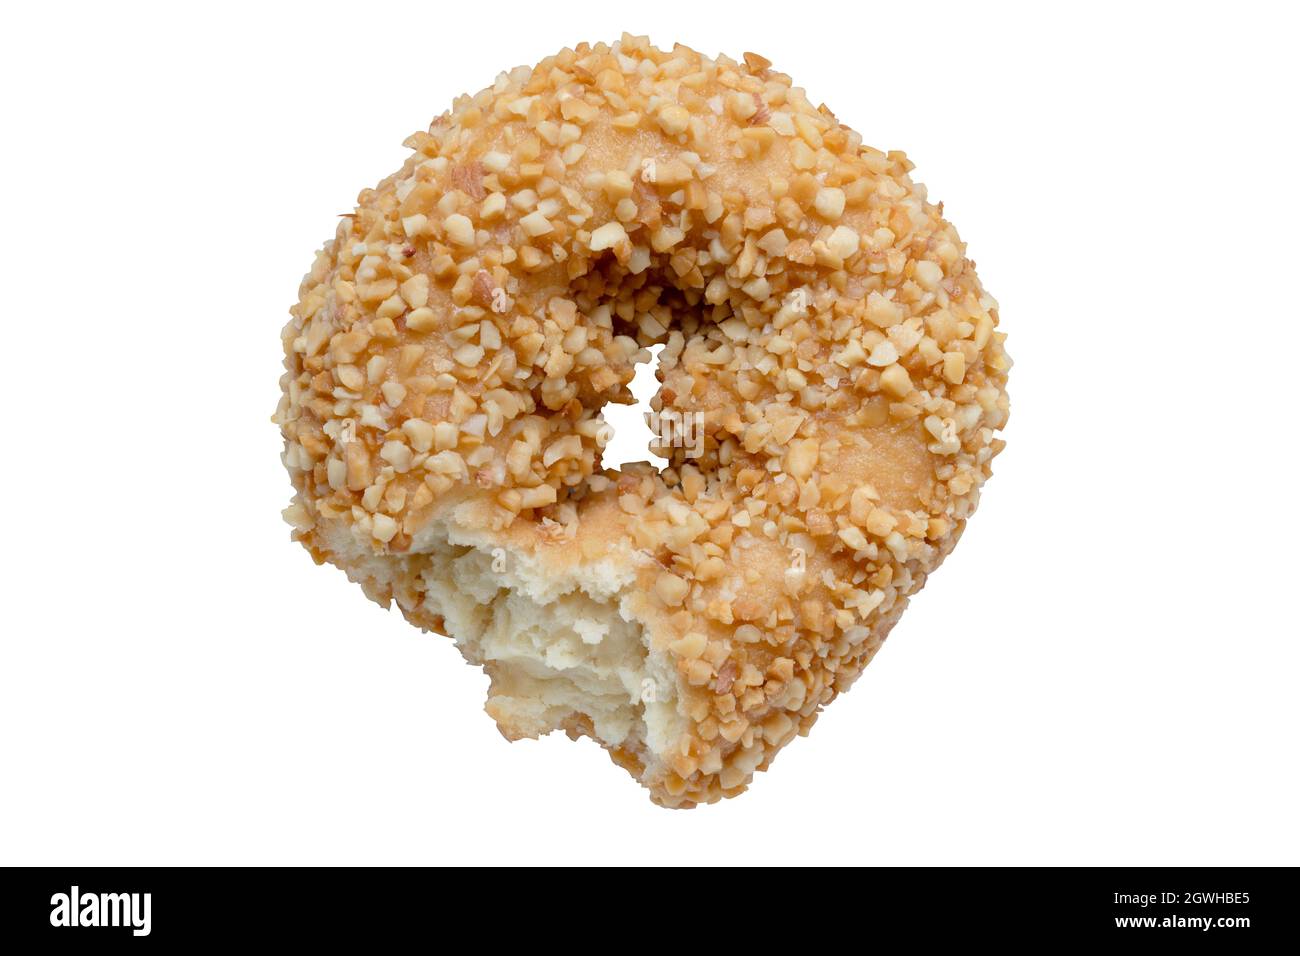 Hojuelas de donut o donut con mordedura comida marque el objeto de alimento aislado sobre fondo blanco Foto de stock